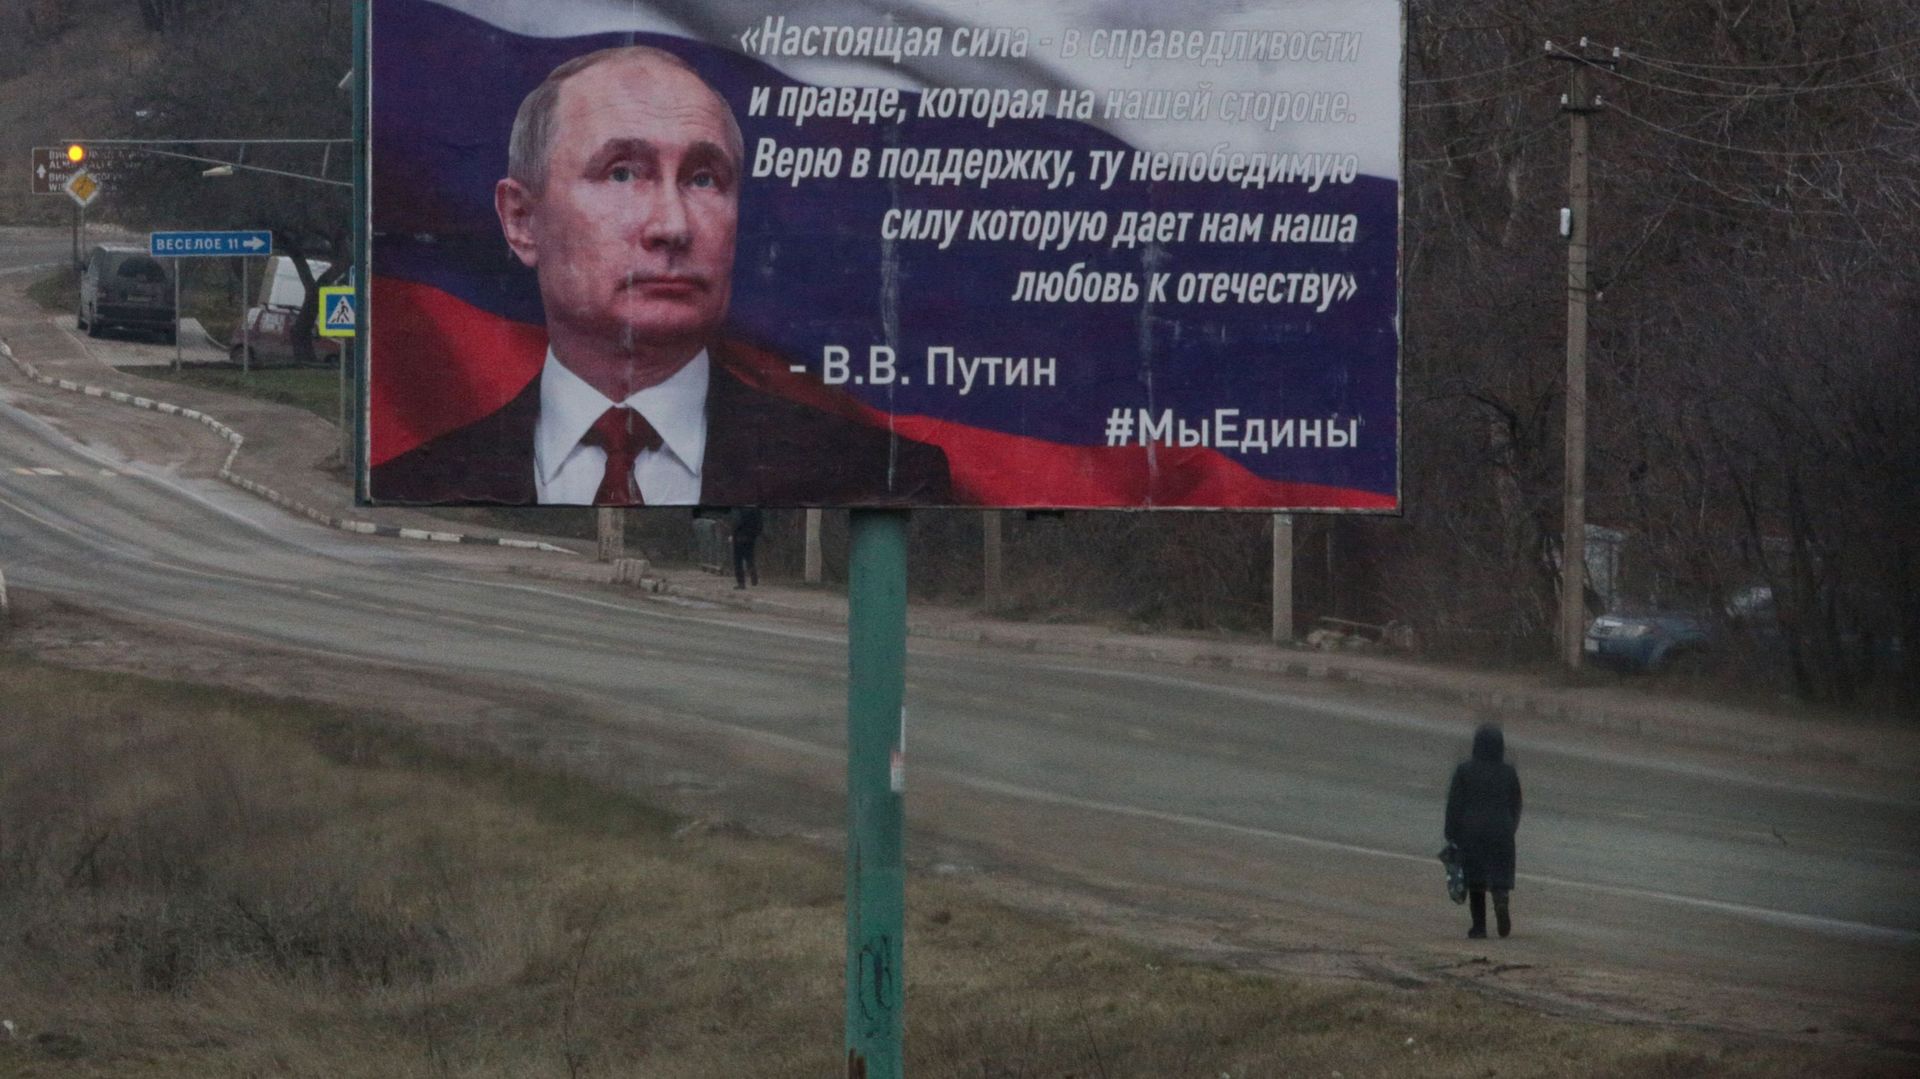 Simferopol, en Crimée. Sur le panneau montrant Vladimir Poutine: "La force réelle est dans la justice et la vérité, qui sont de notre côté. Je crois en la force que notre Patrie nous donne"